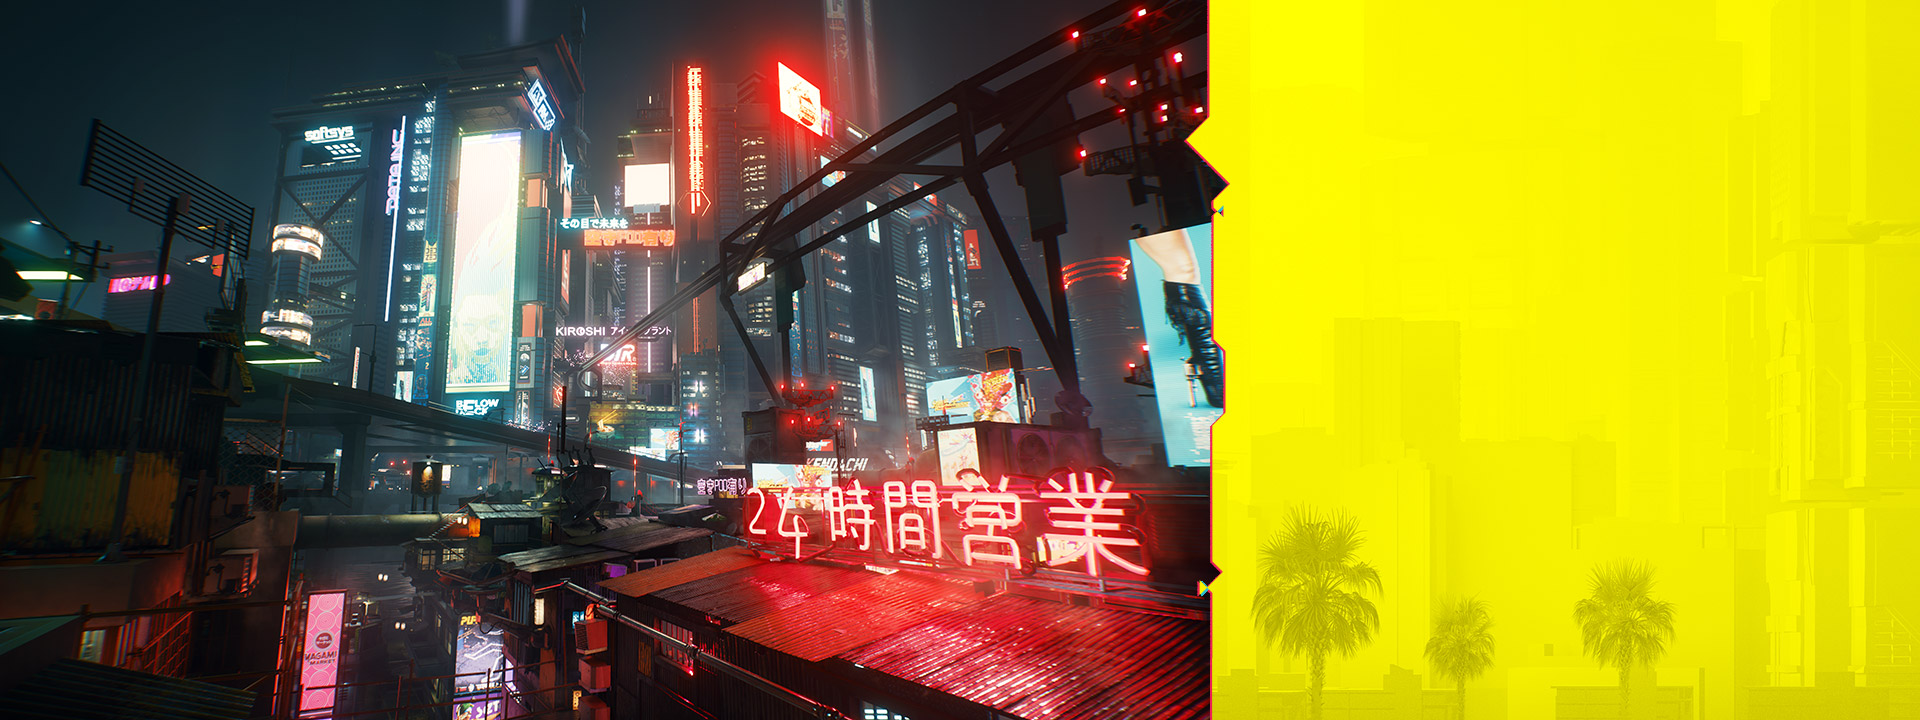 Die Neonschilder in Night City leuchten vor einer dunstigen nächtlichen Stadtkulisse.